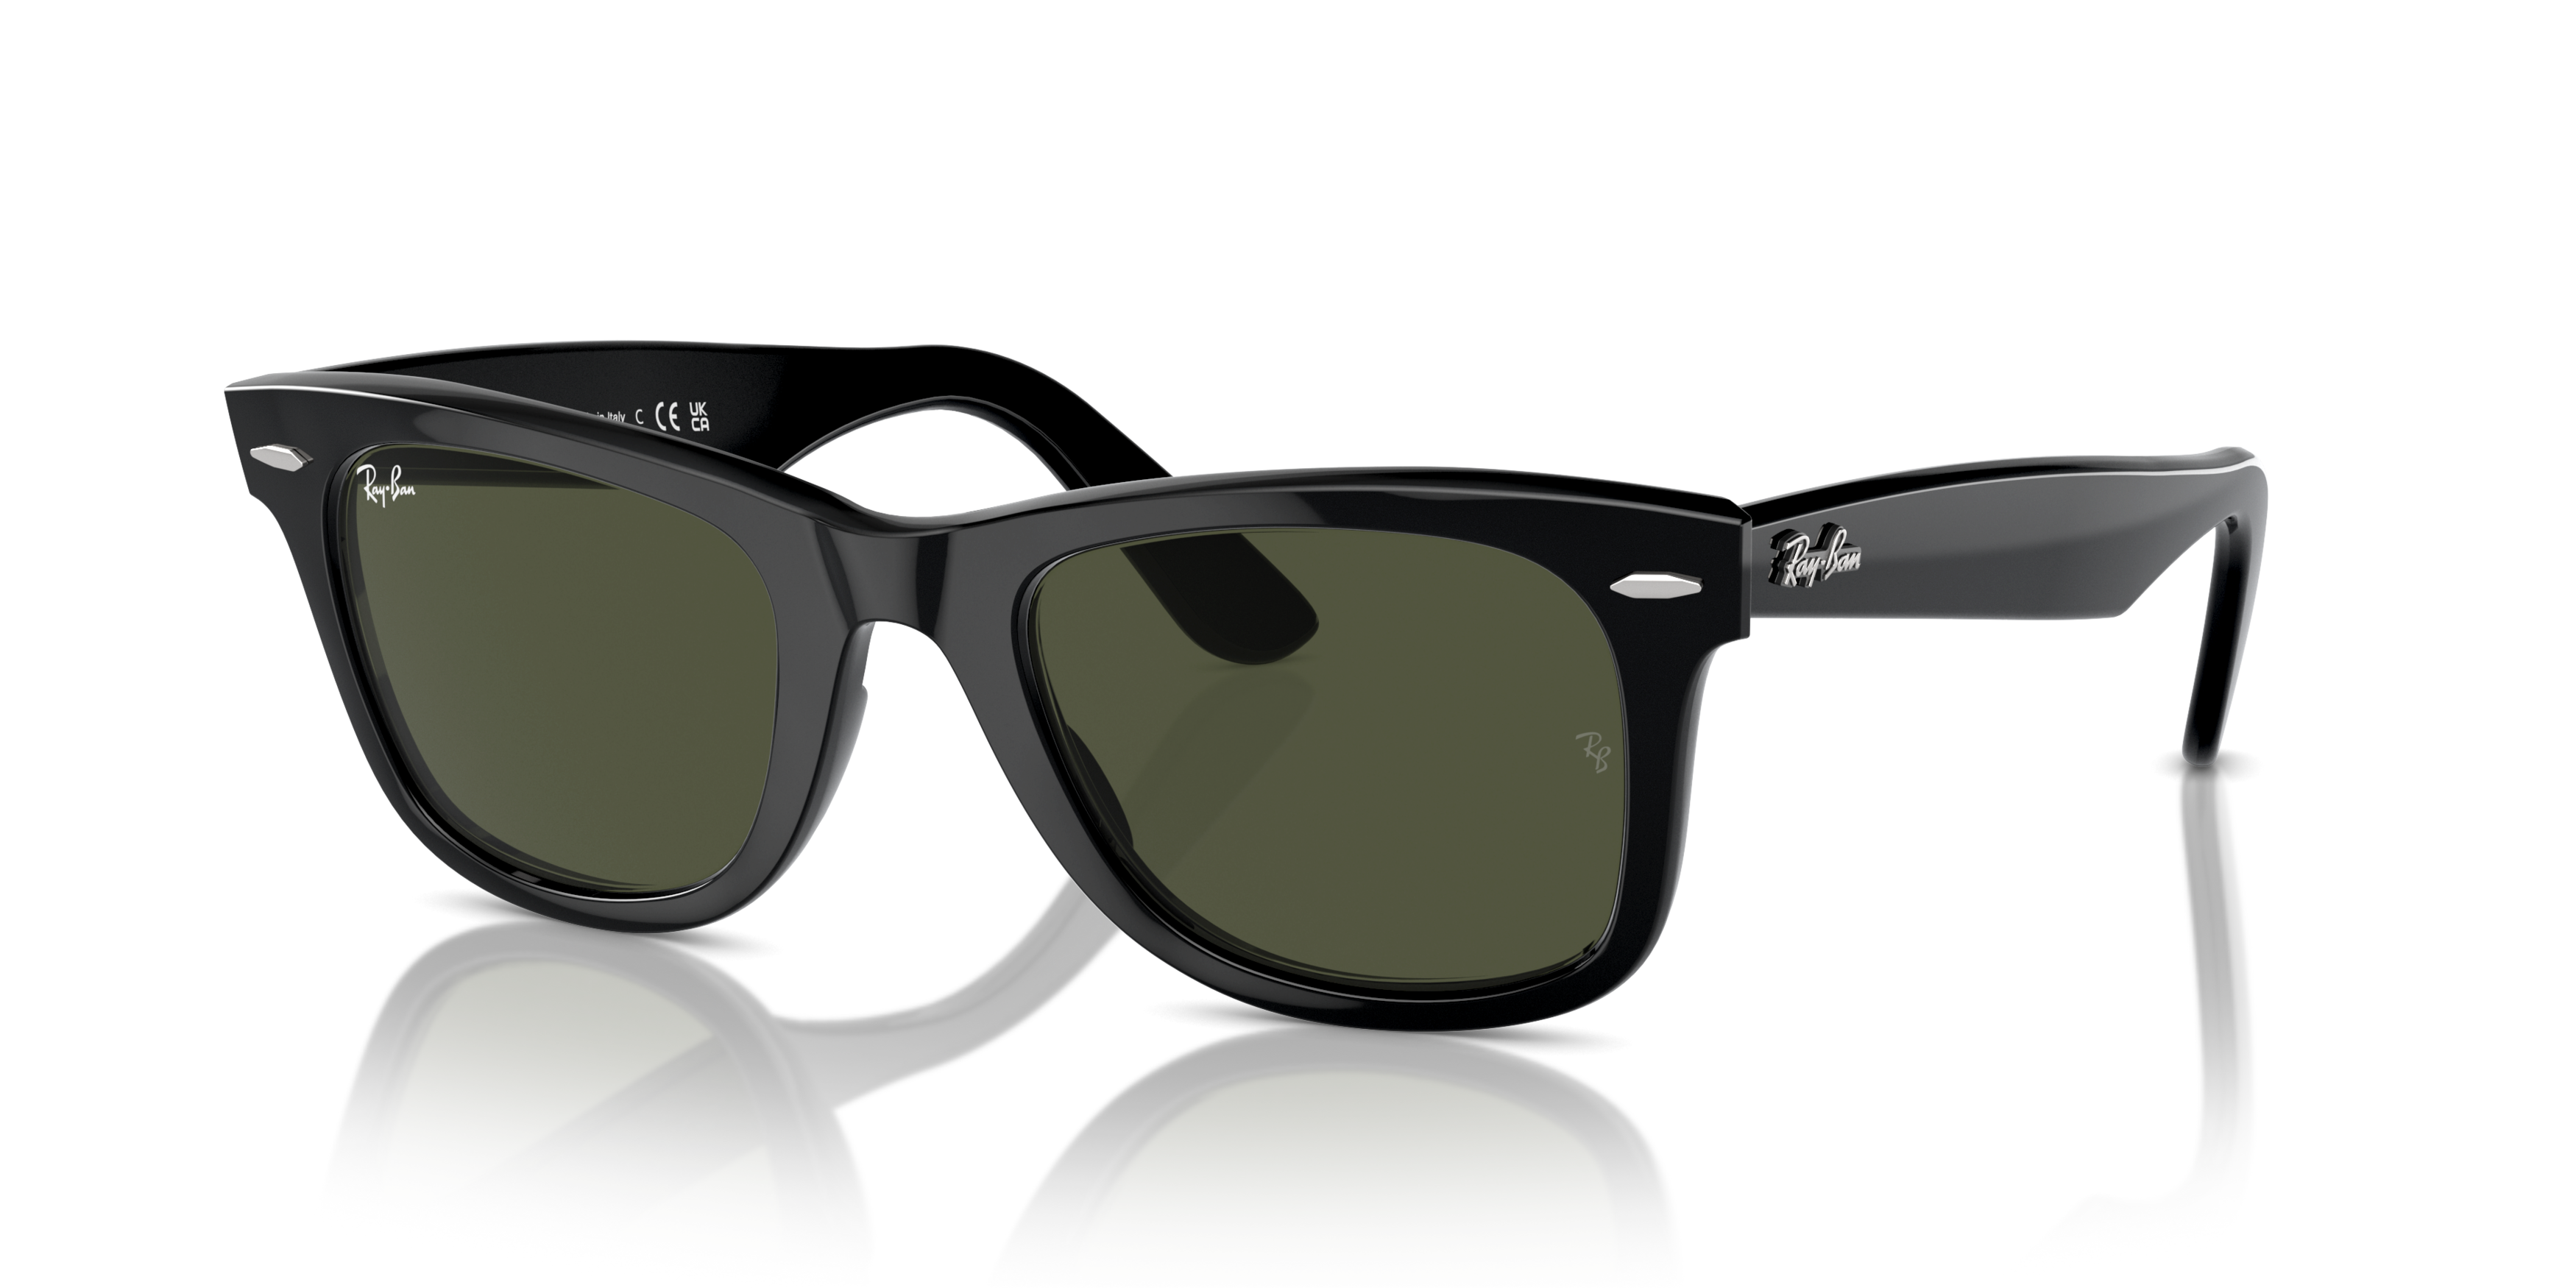 Angle_Left01 Ray-Ban Wayfarer RB 2140 (901) Sunglasses Green / Black